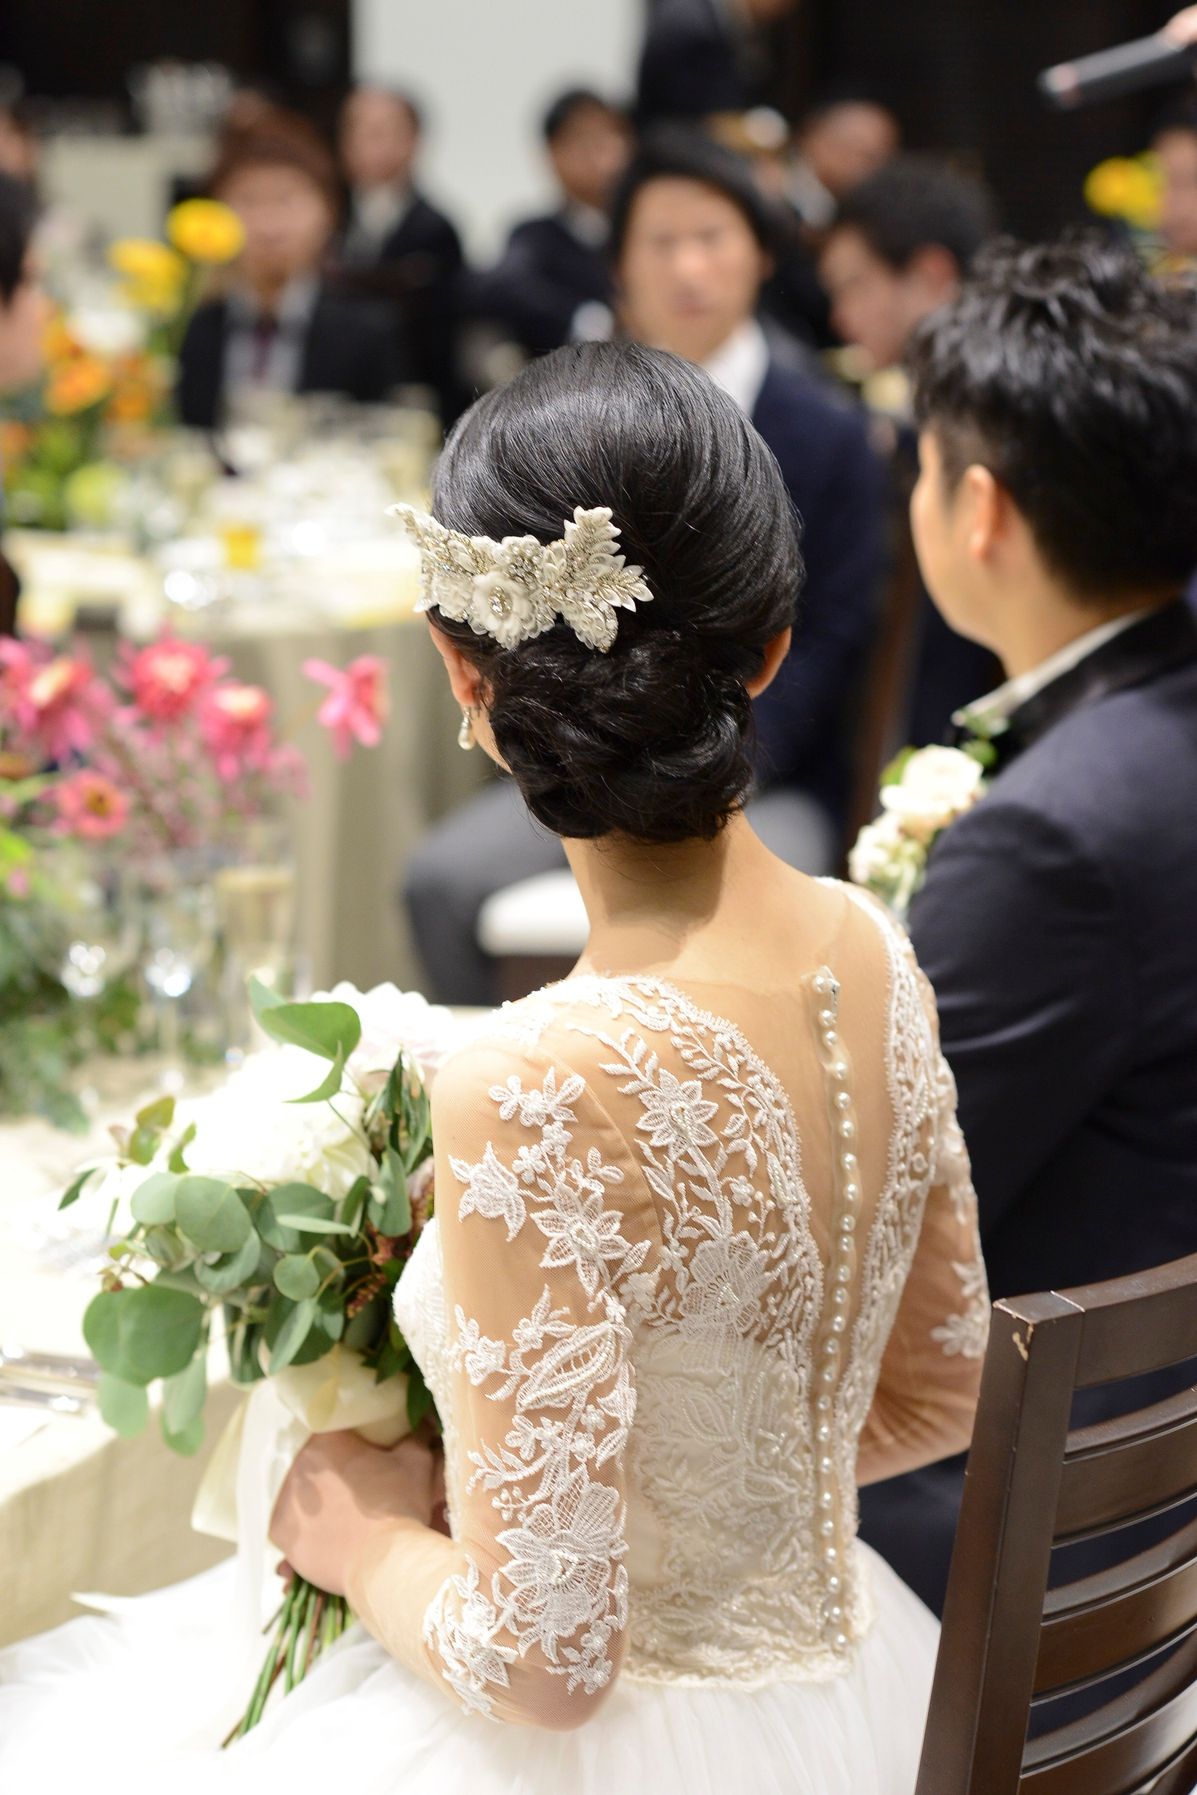 花嫁に人気 結婚式のヘッドドレス特集 デザイン 作り方 ショップまとめ 結婚式準備はウェディングニュース